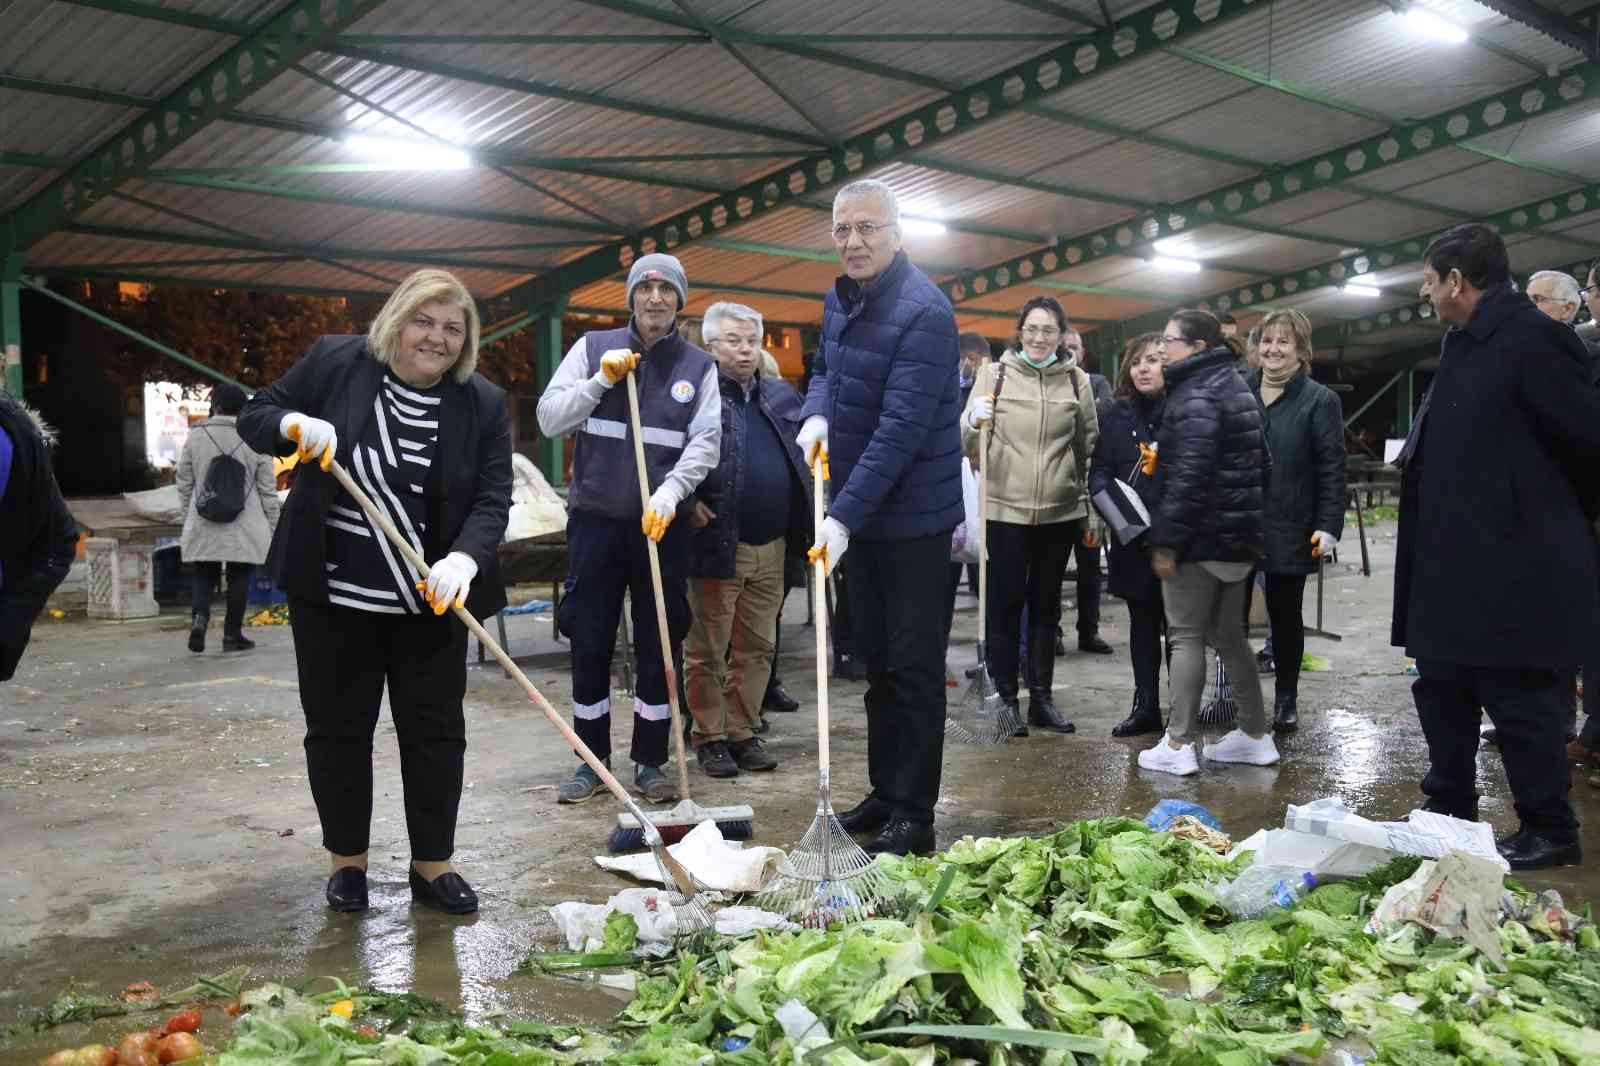 mezitli belediyesinin kompost projesi universite de tez konusu oldu 141f12d